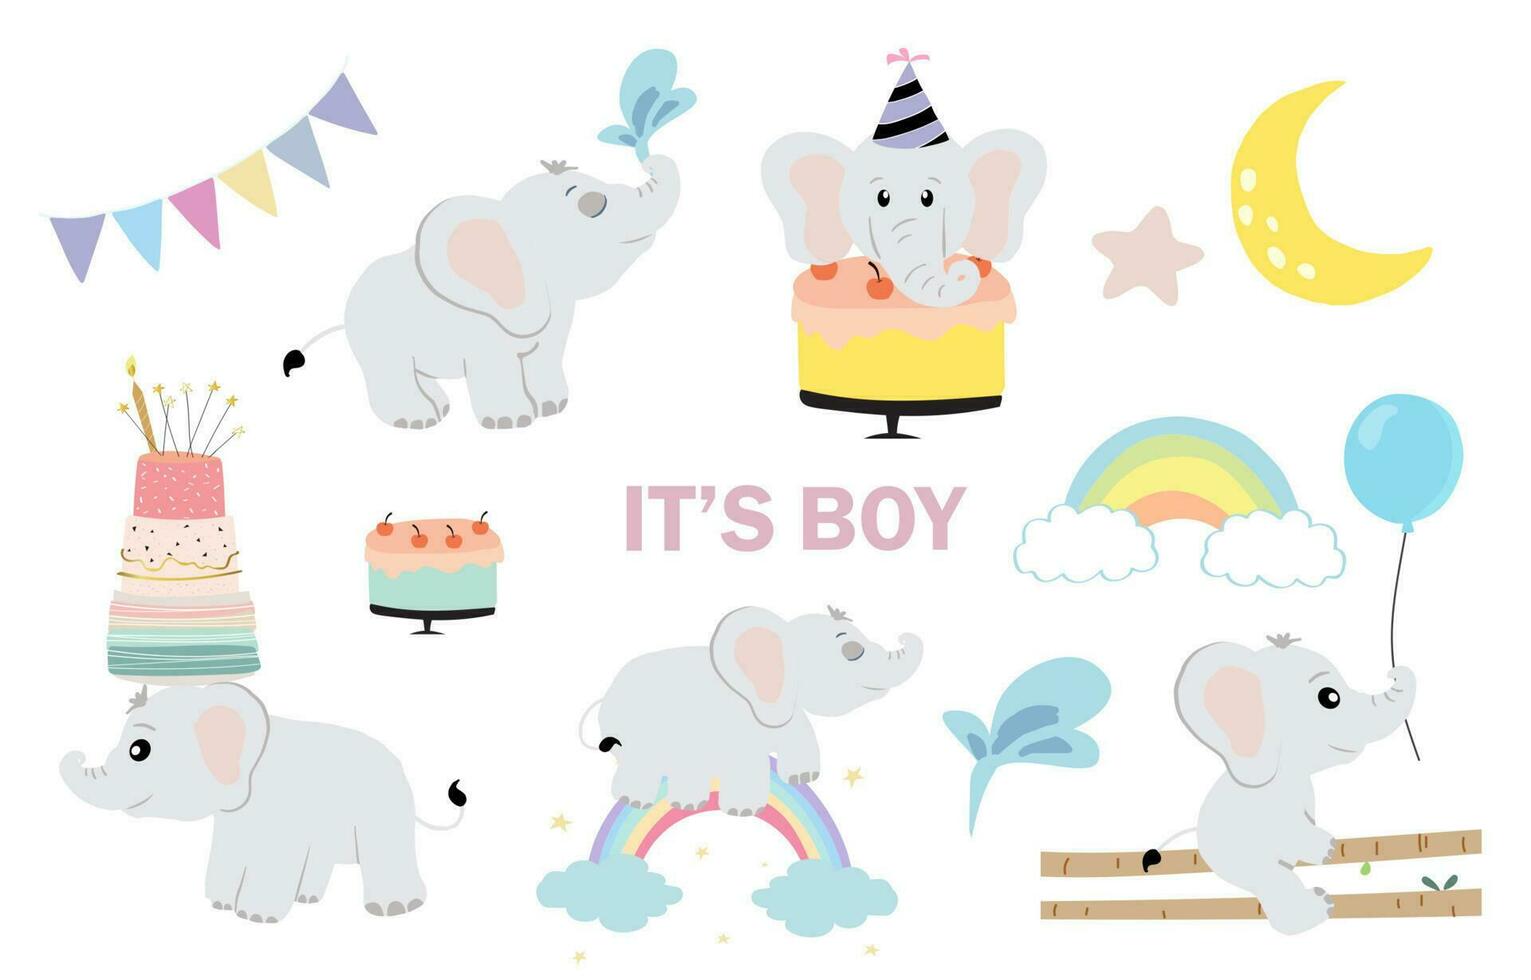 bambino elefante oggetto con Palloncino, arcobaleno, Luna per compleanno cartolina vettore